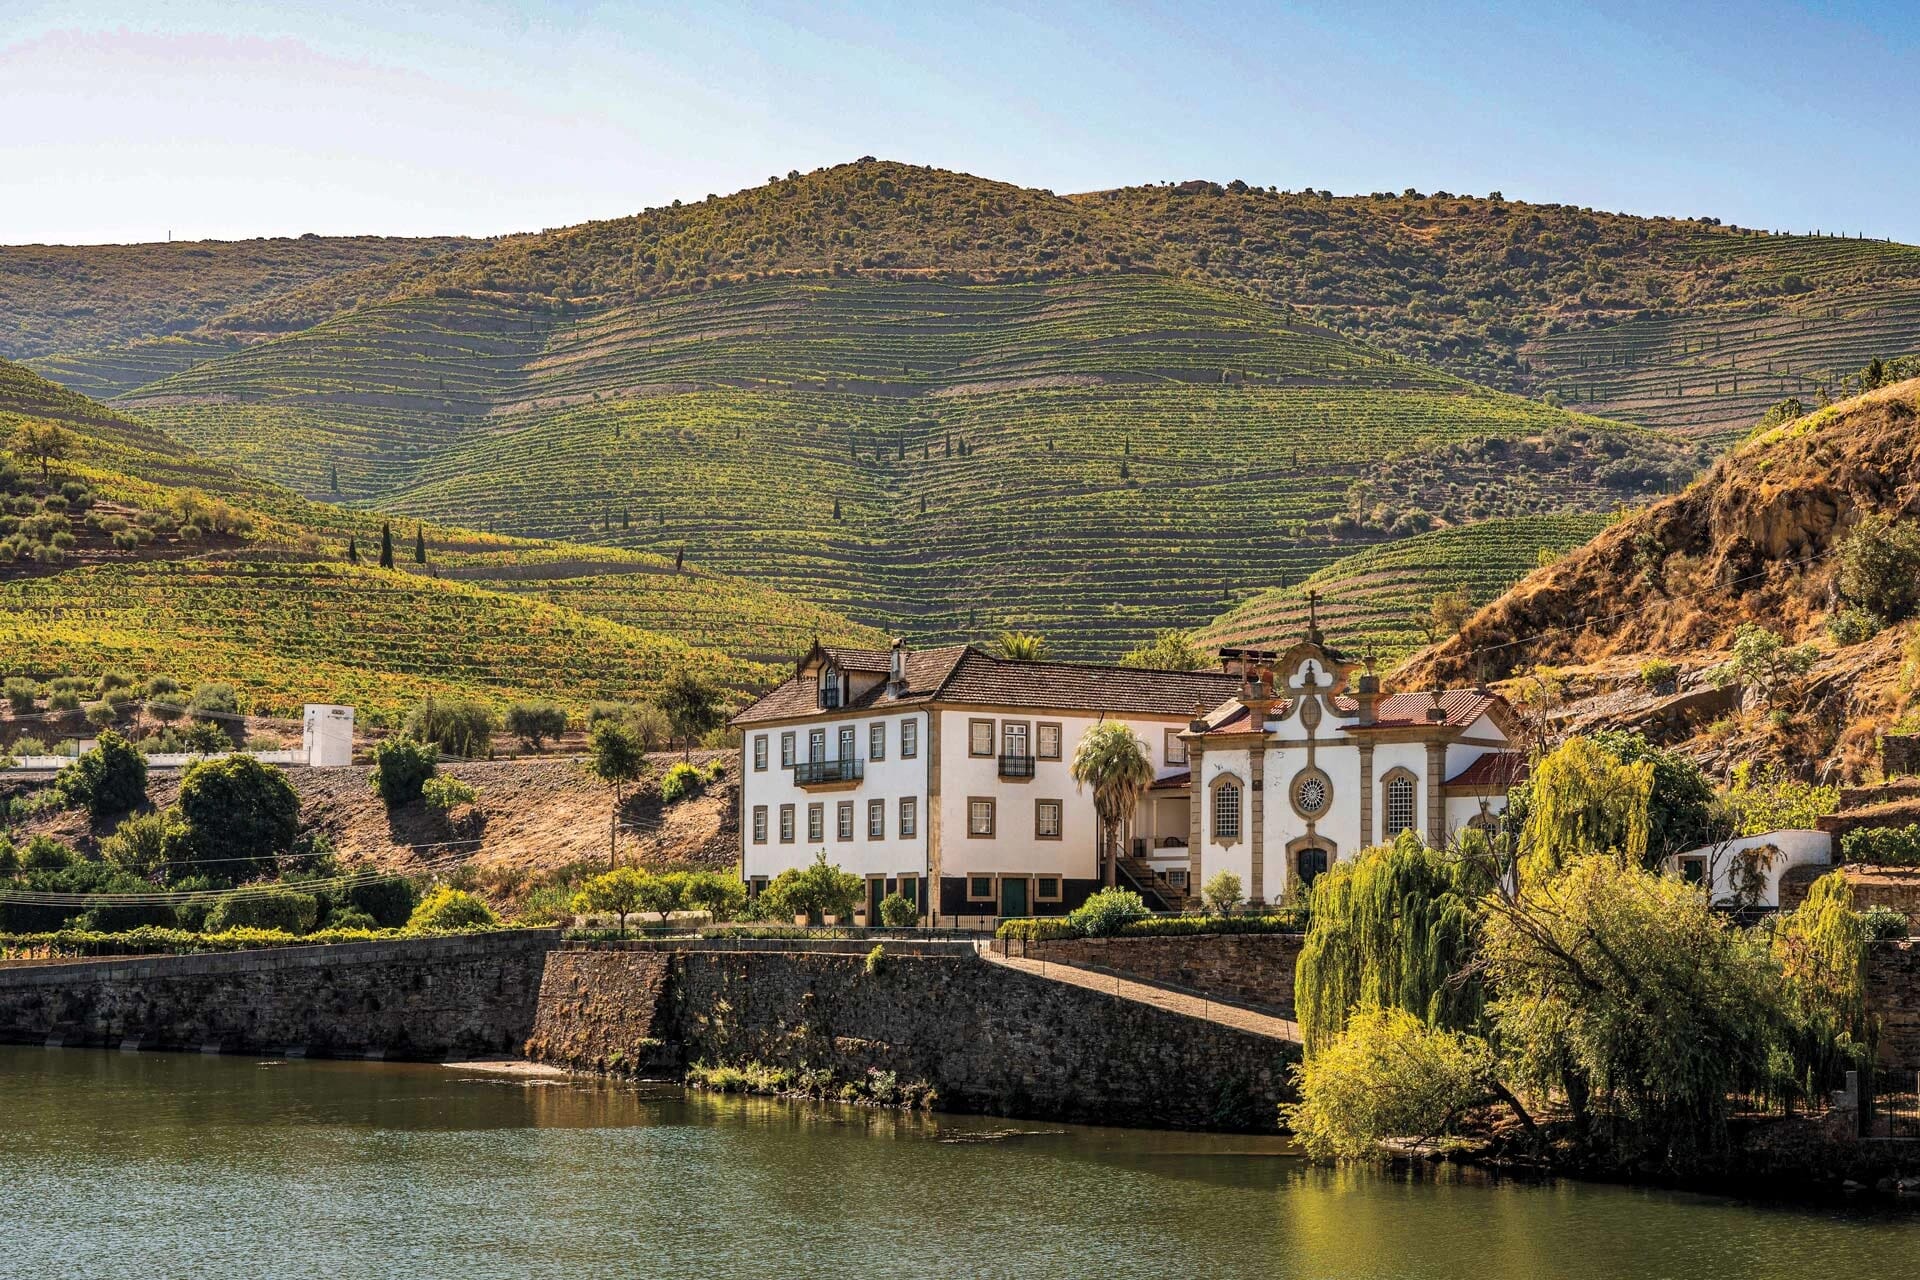 Os Melhores Hotéis no Douro com SPA: Relaxamento e Luxo em Harmonia